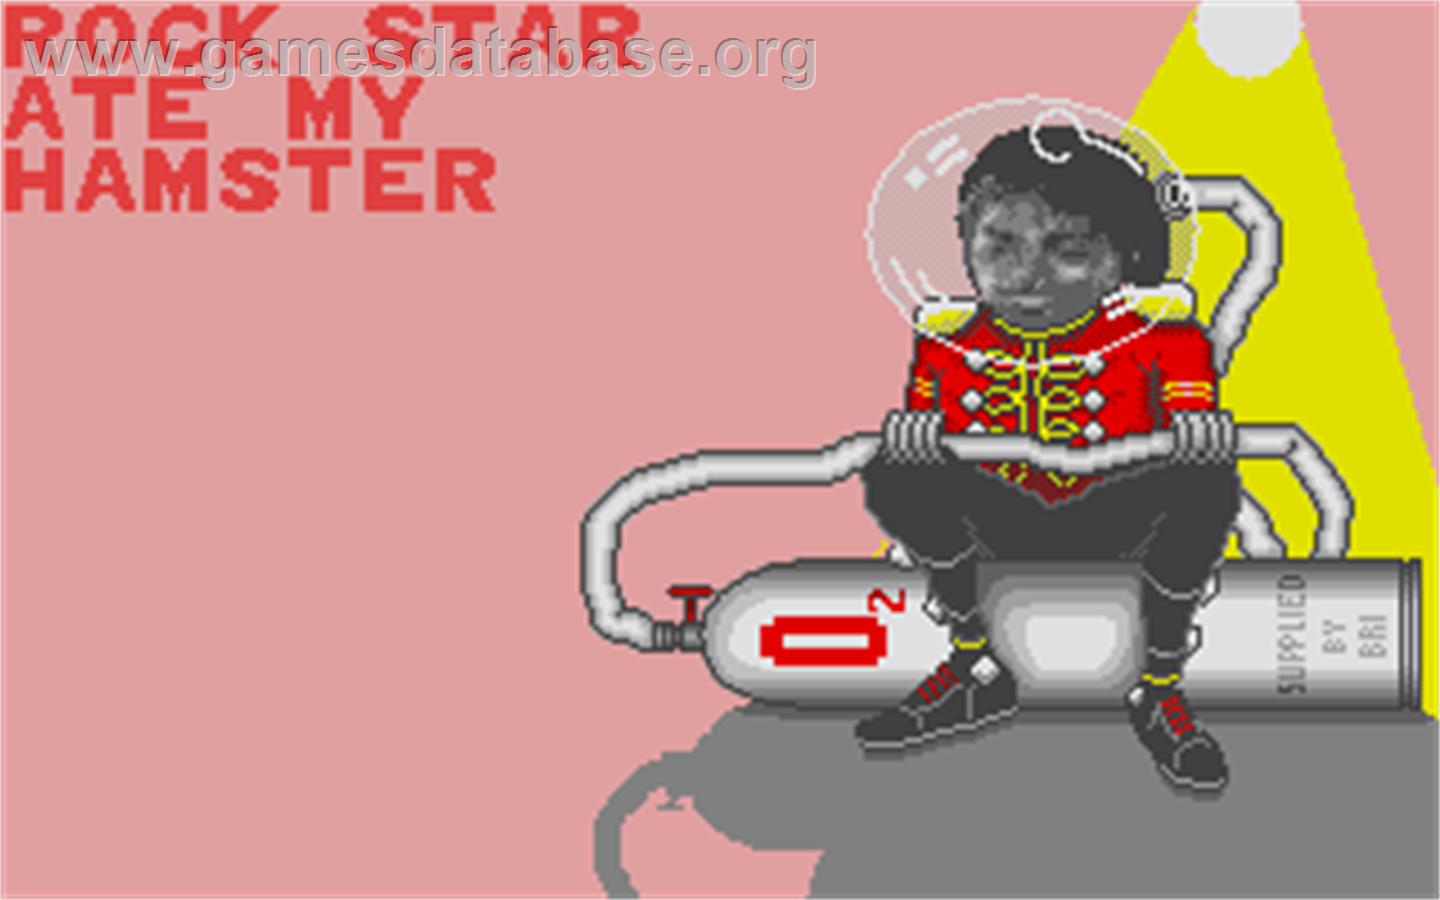 Rock Star Ate my Hamster - Atari ST - Artwork - Title Screen